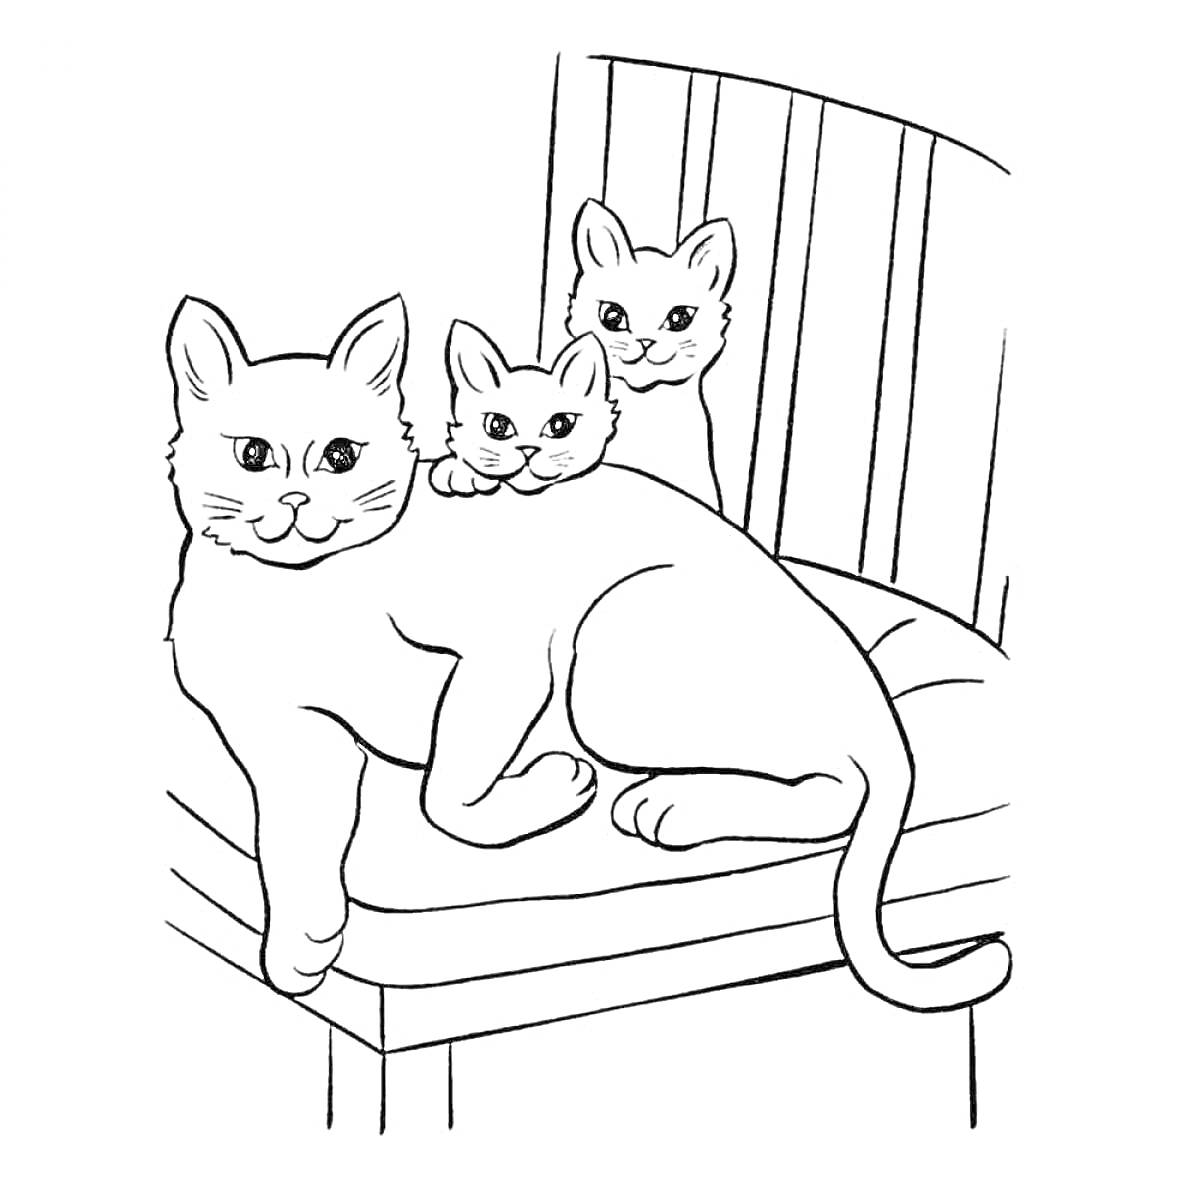 Раскраска Две маленькие кошки и одна большая кошка на стуле